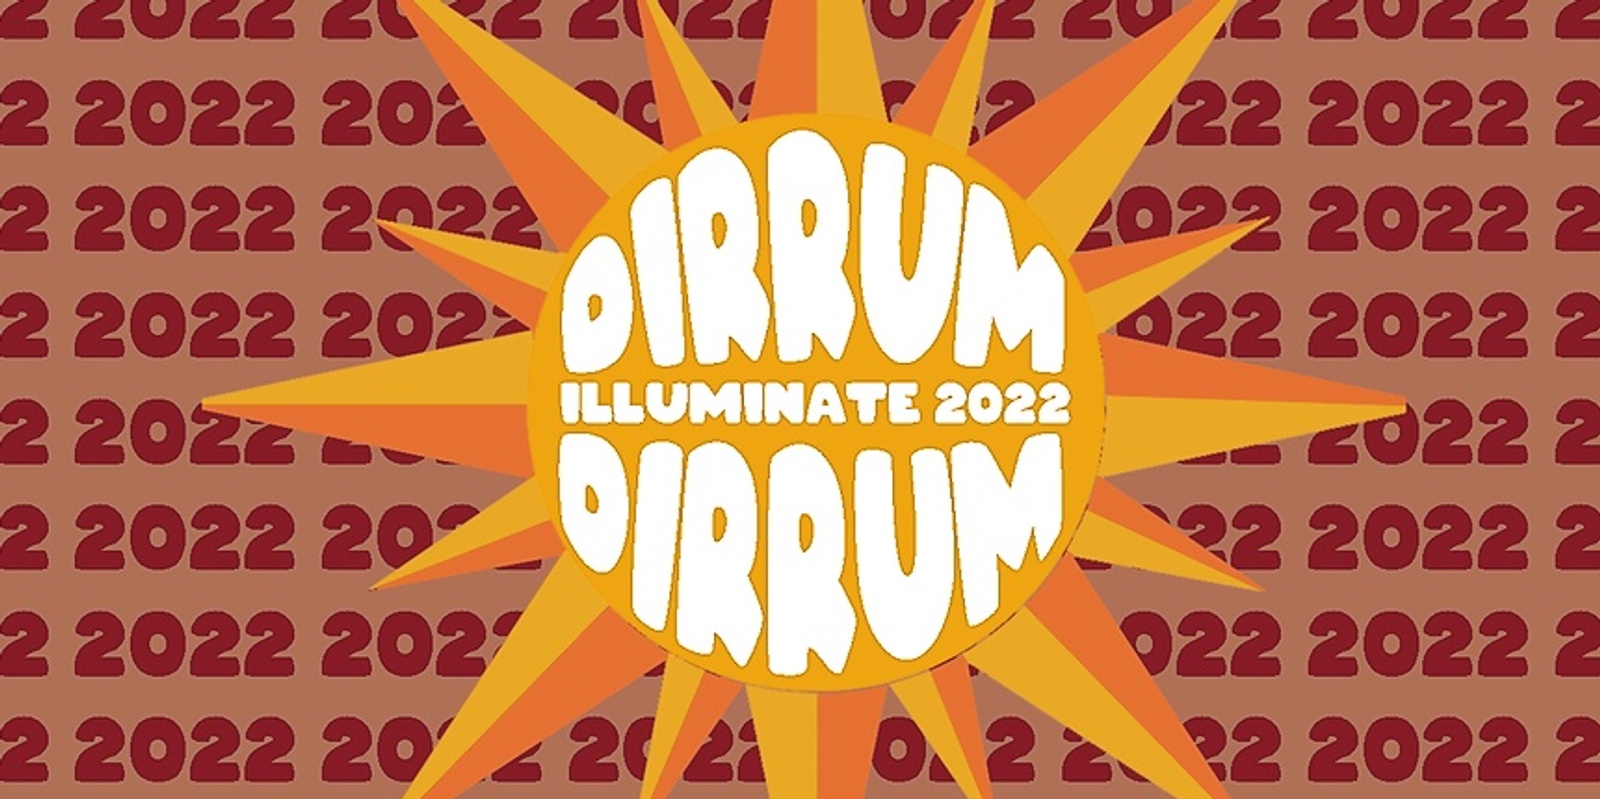 Banner image for Dirrum Festival